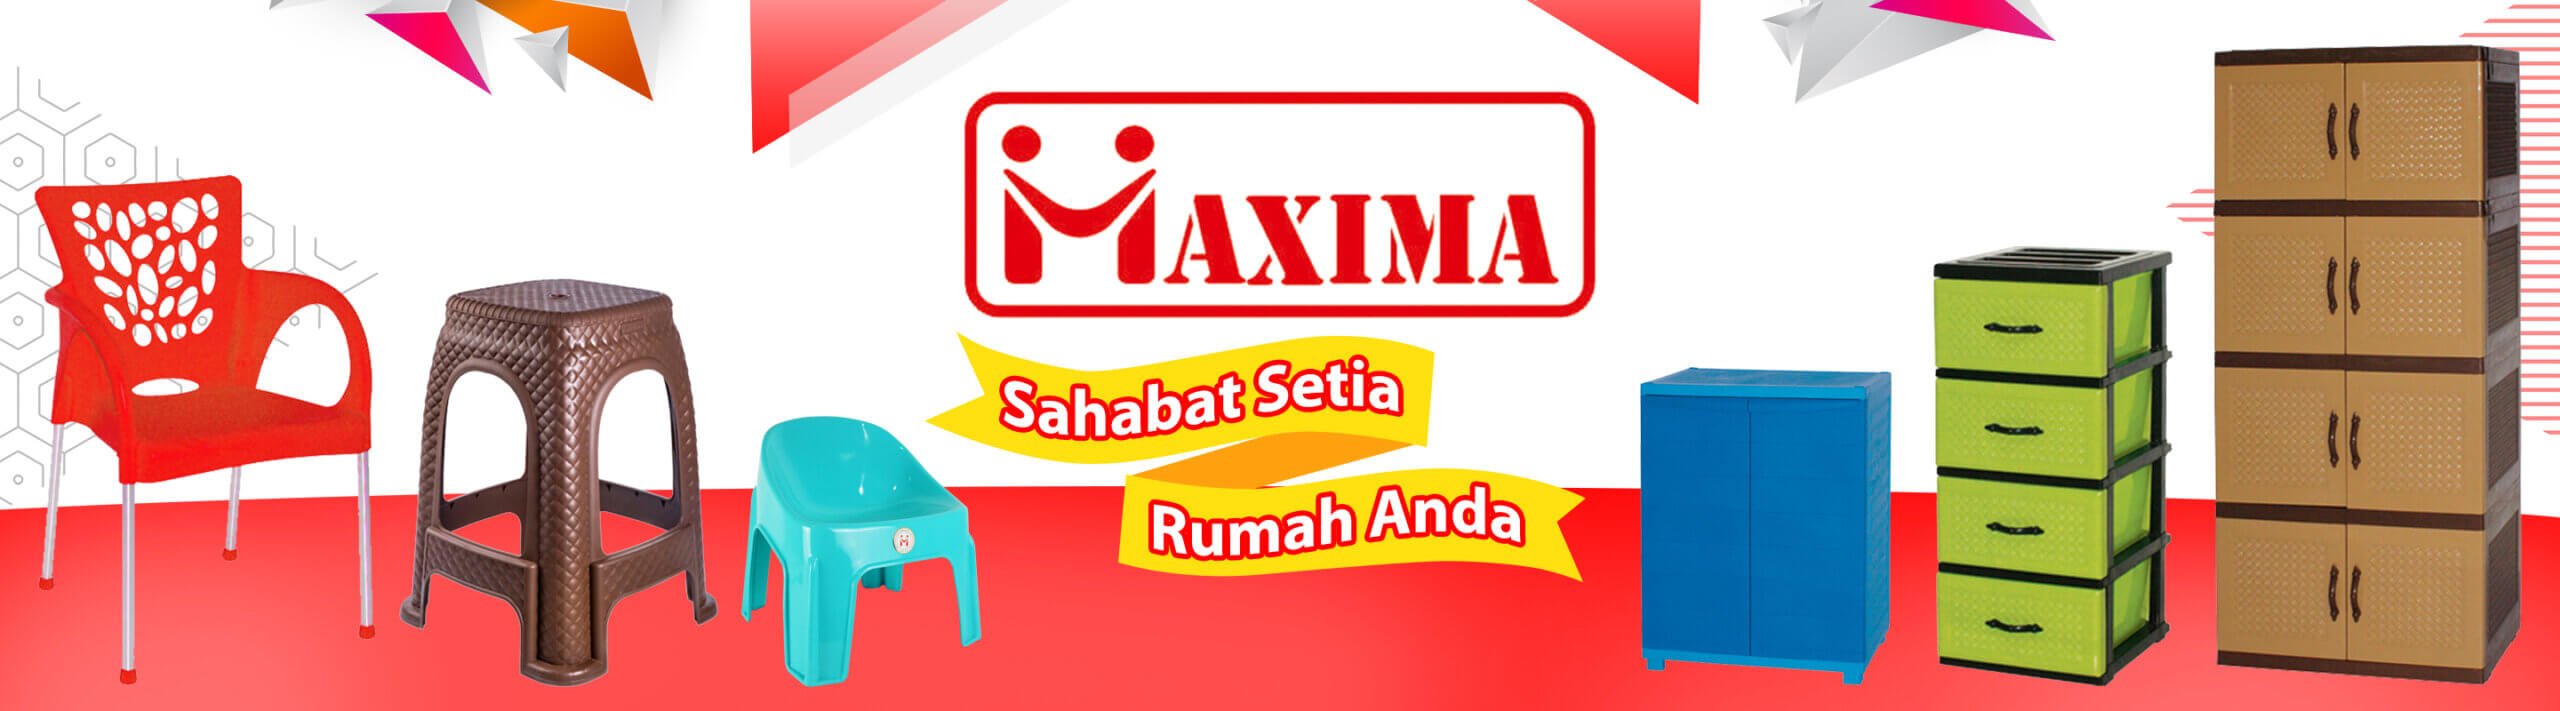 Maxima furnitures